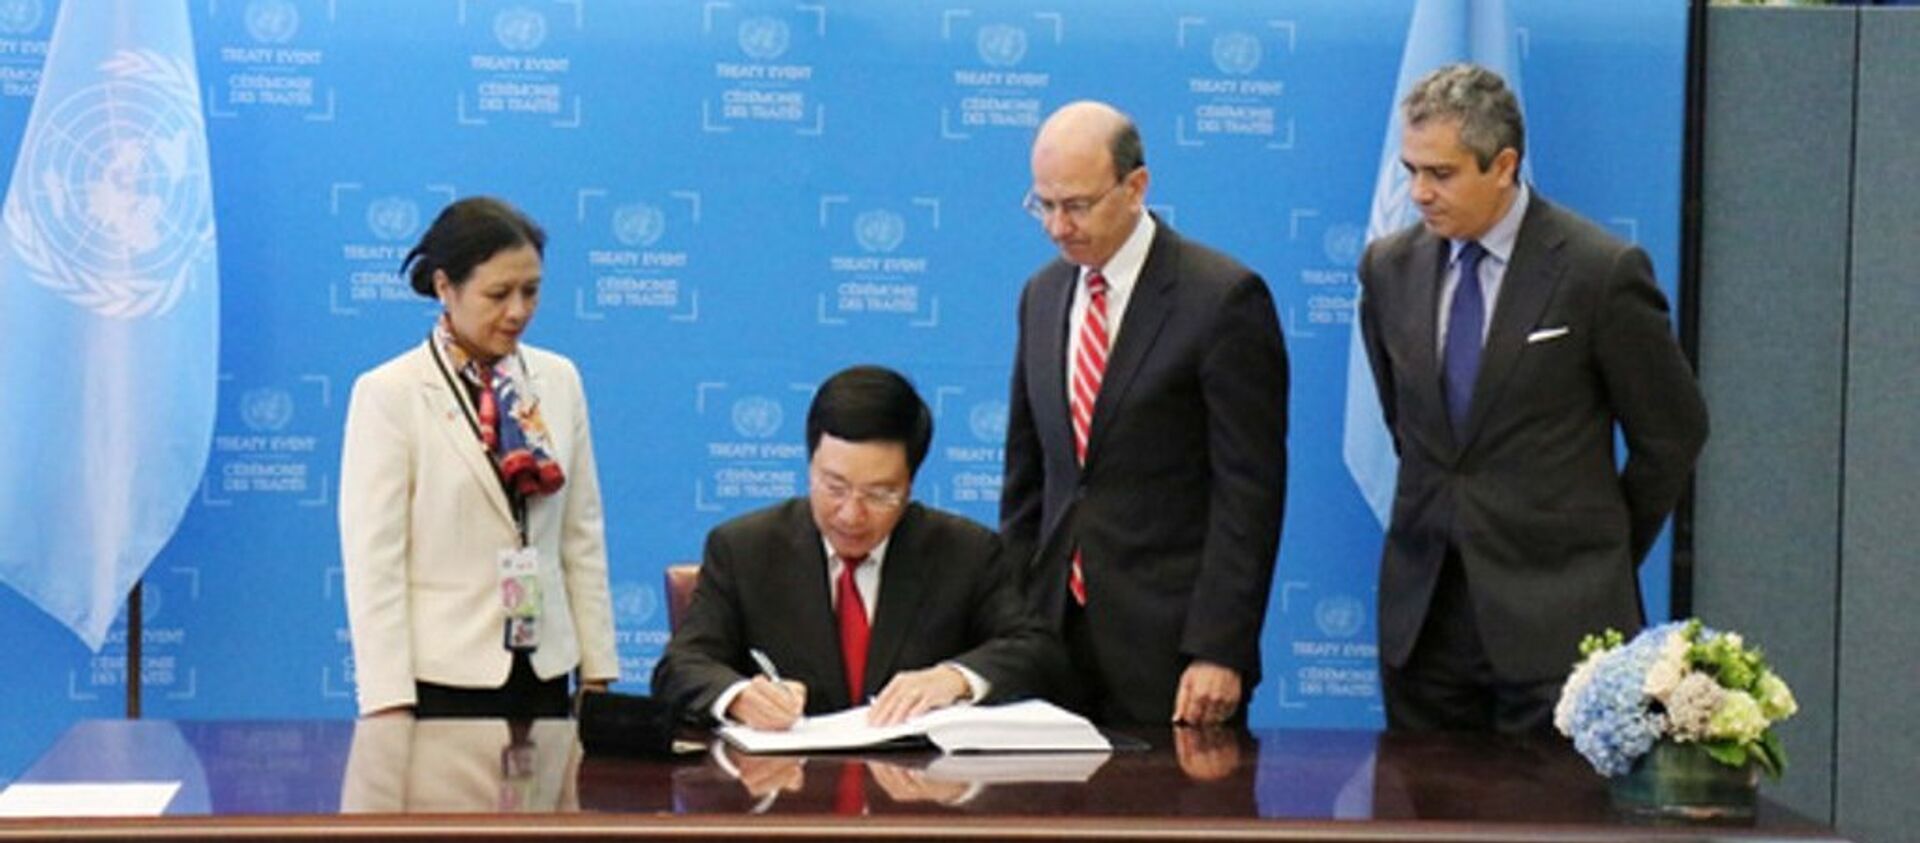 Phó Thủ tướng Phạm Bình Minh ký Hiệp ước Cấm vũ khí hạt nhân - Sputnik Việt Nam, 1920, 23.09.2017